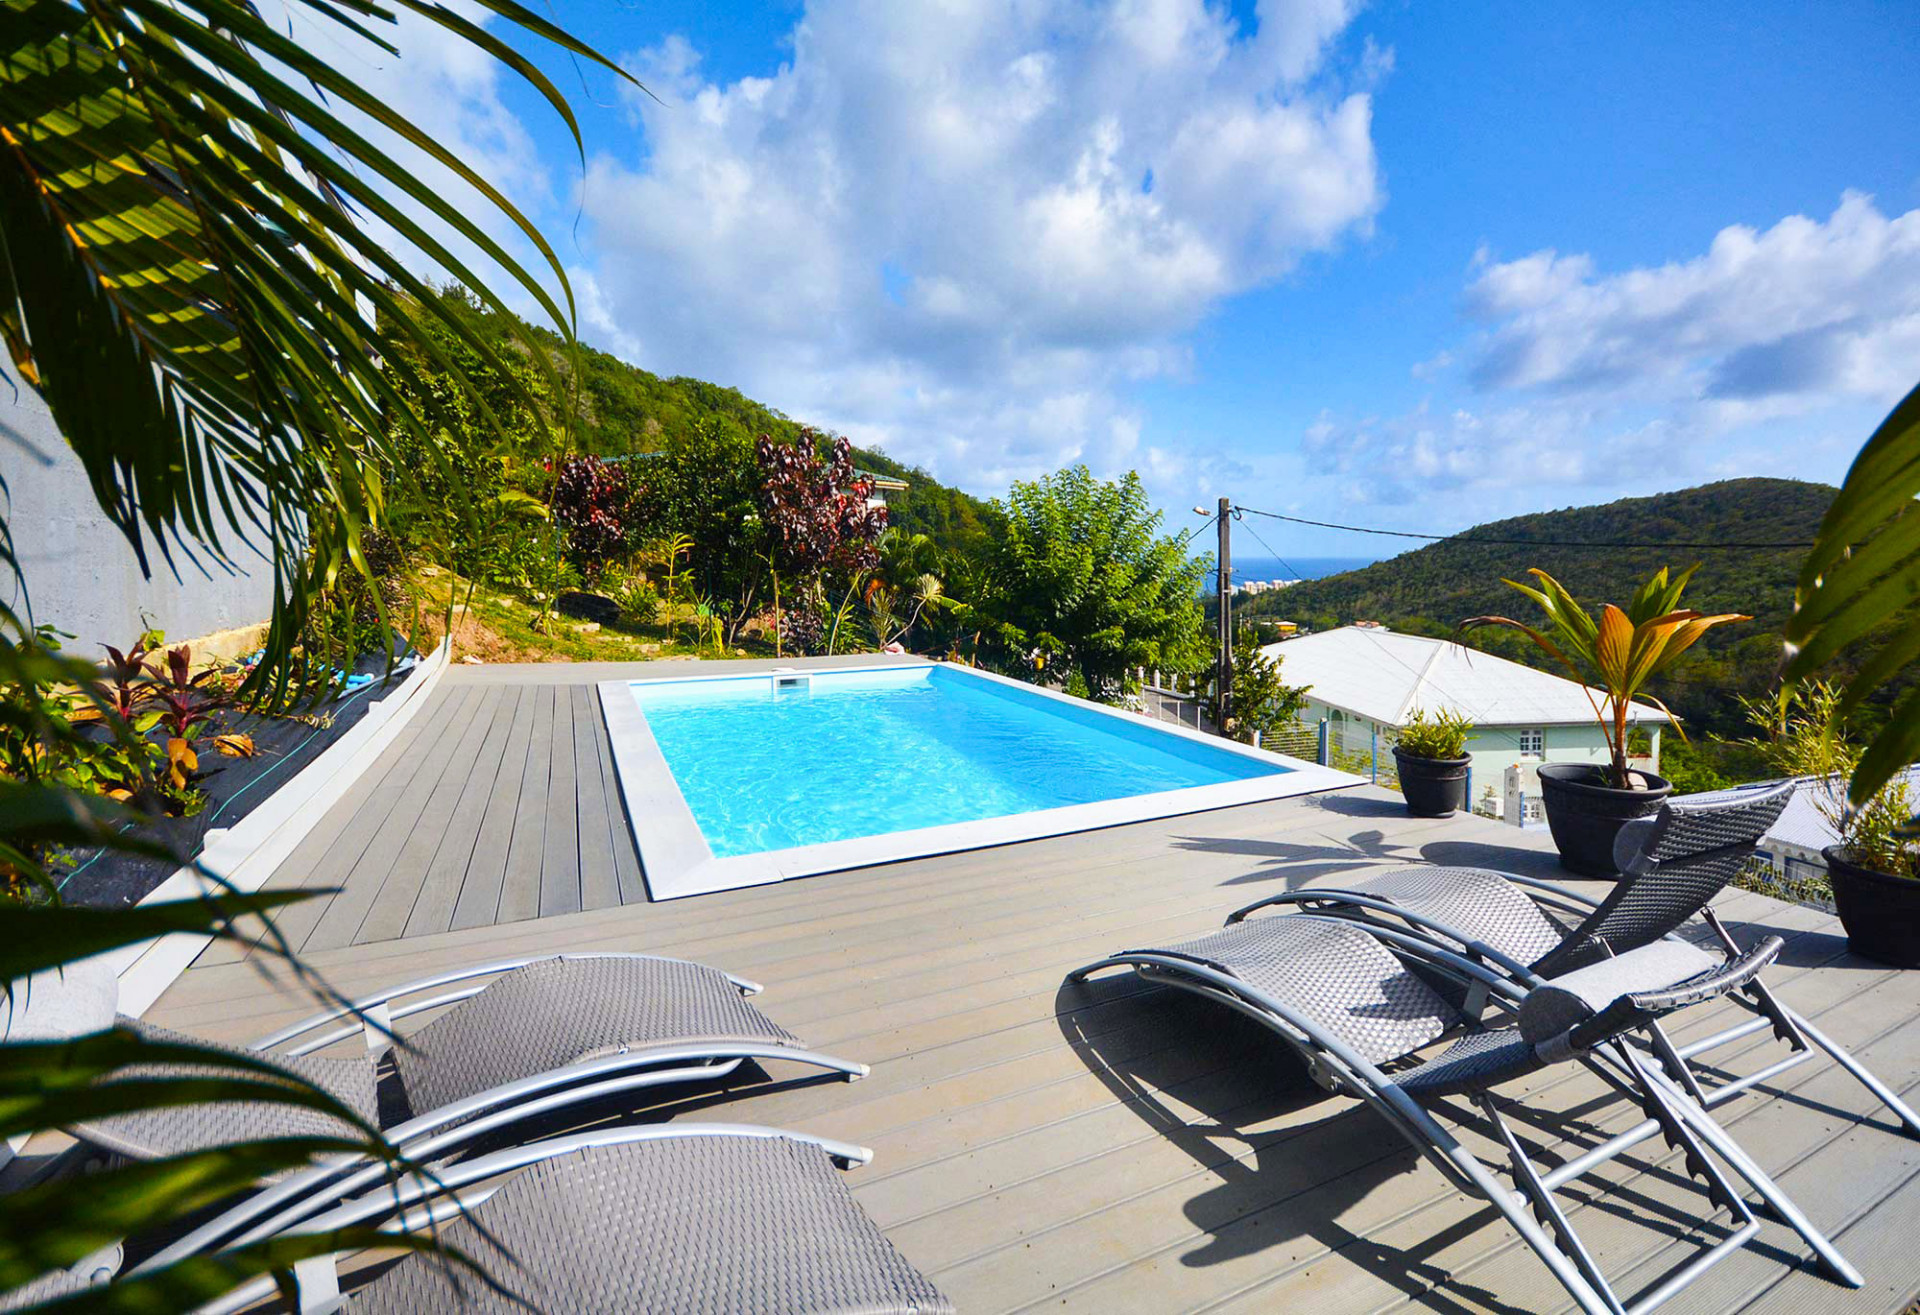 L'ENVOL location Martinique appartement vue mer piscine Sainte Luce - Piscine de l'envol vue sur la baie de Sainte-Luce